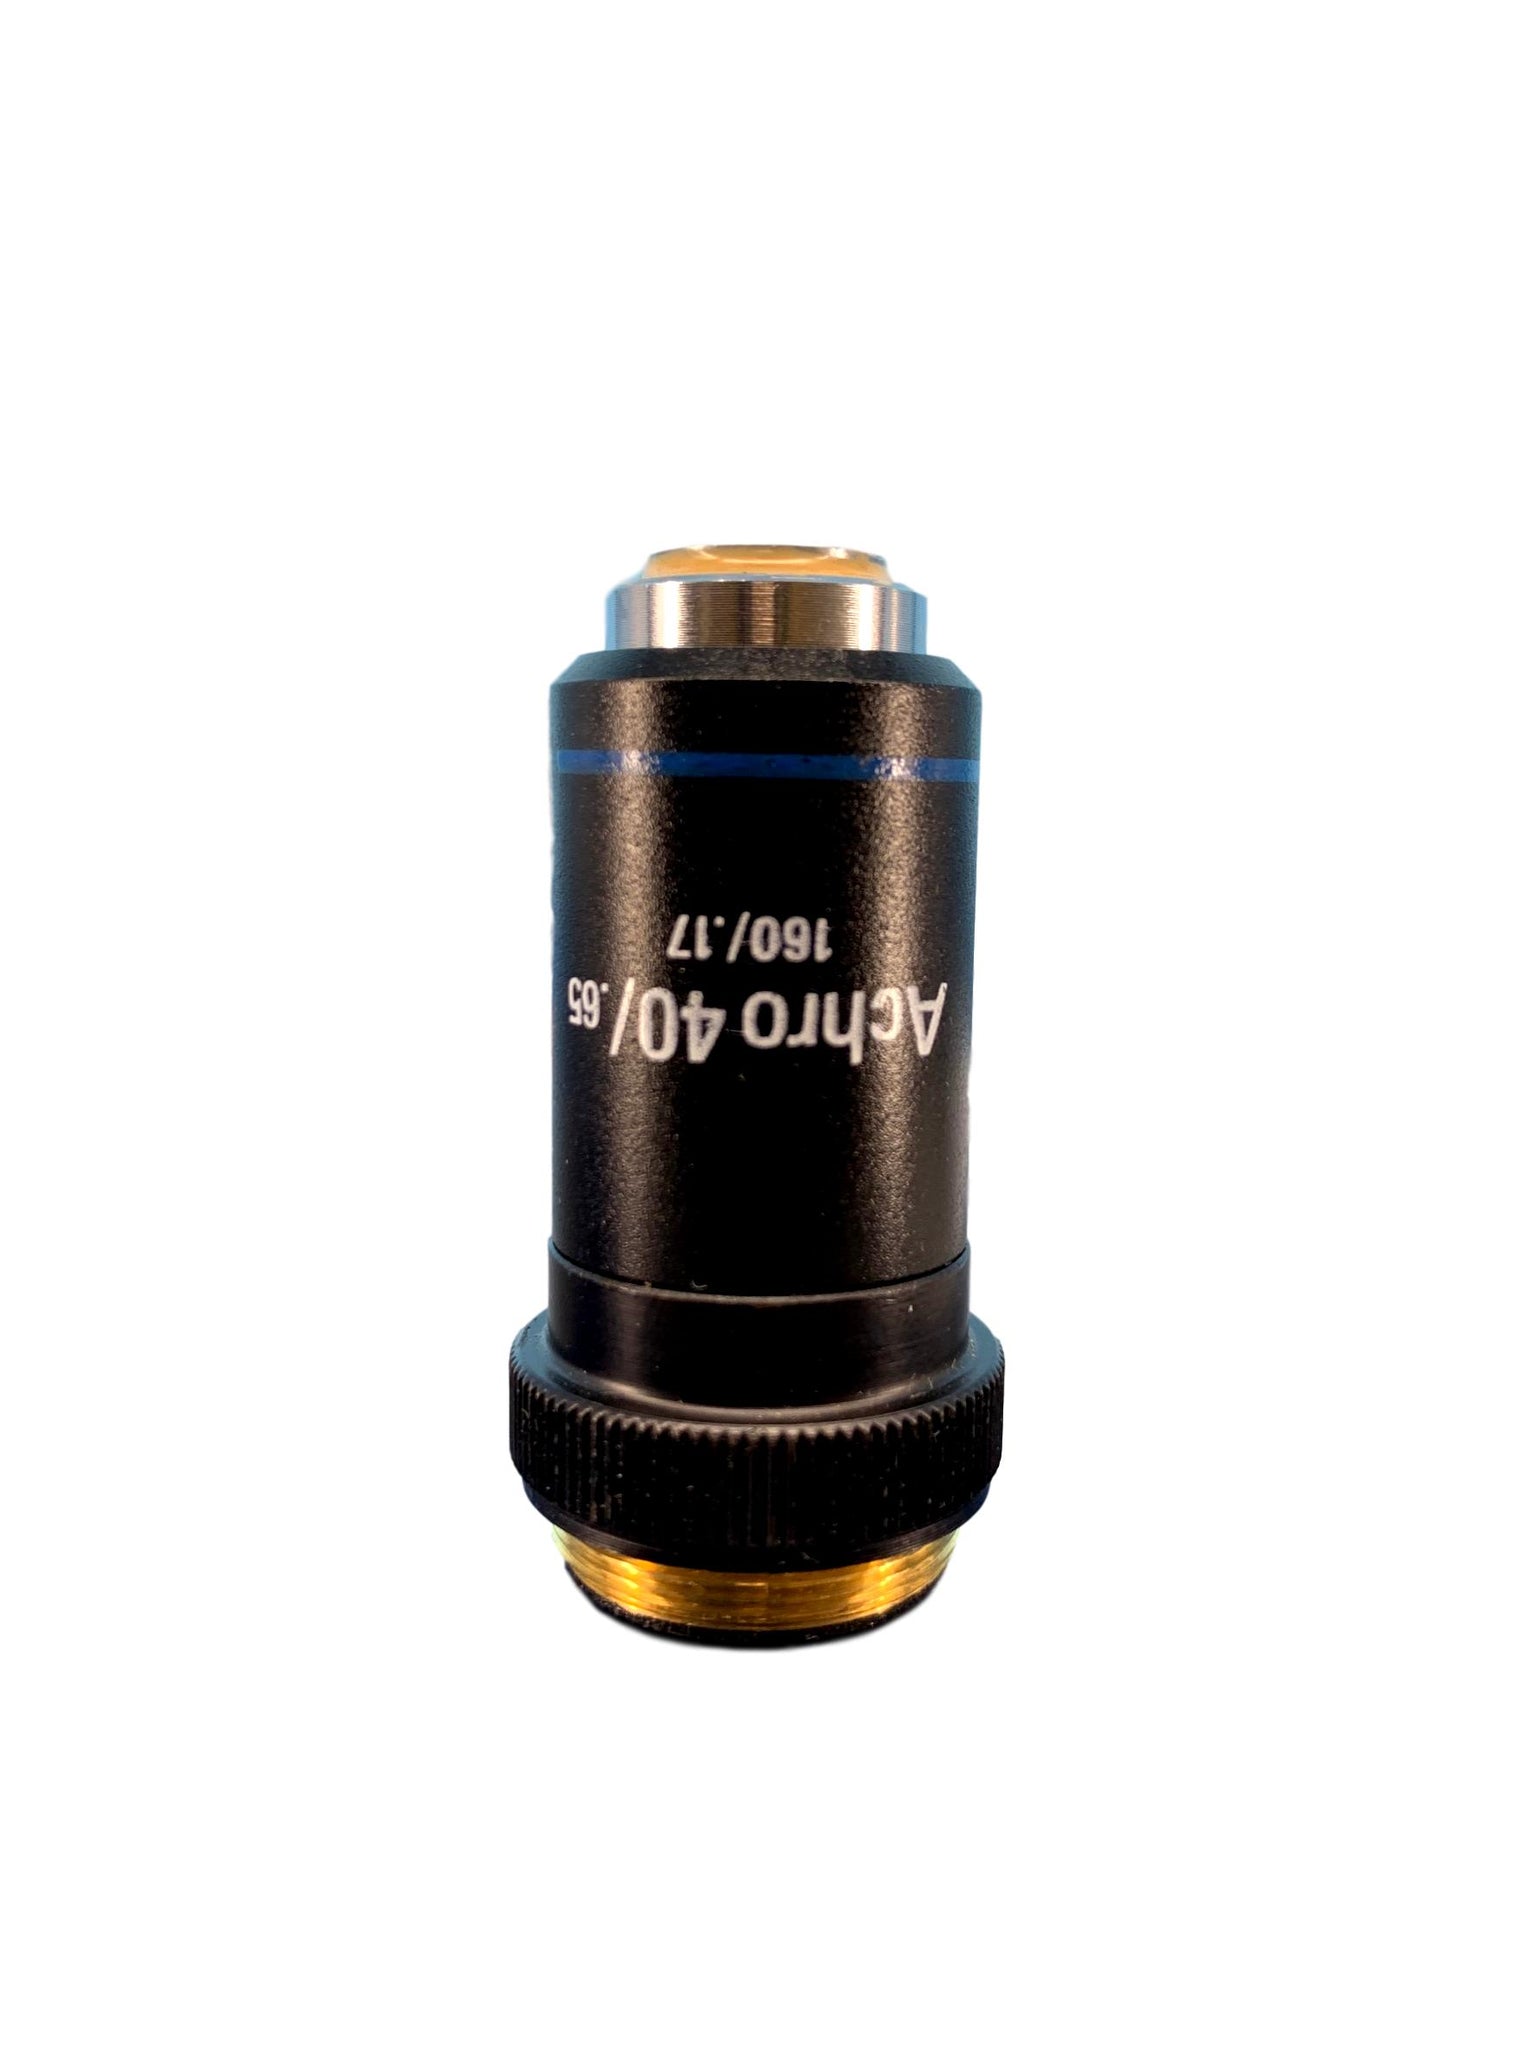 Leica Achro 40x /.65 Microscope Objective